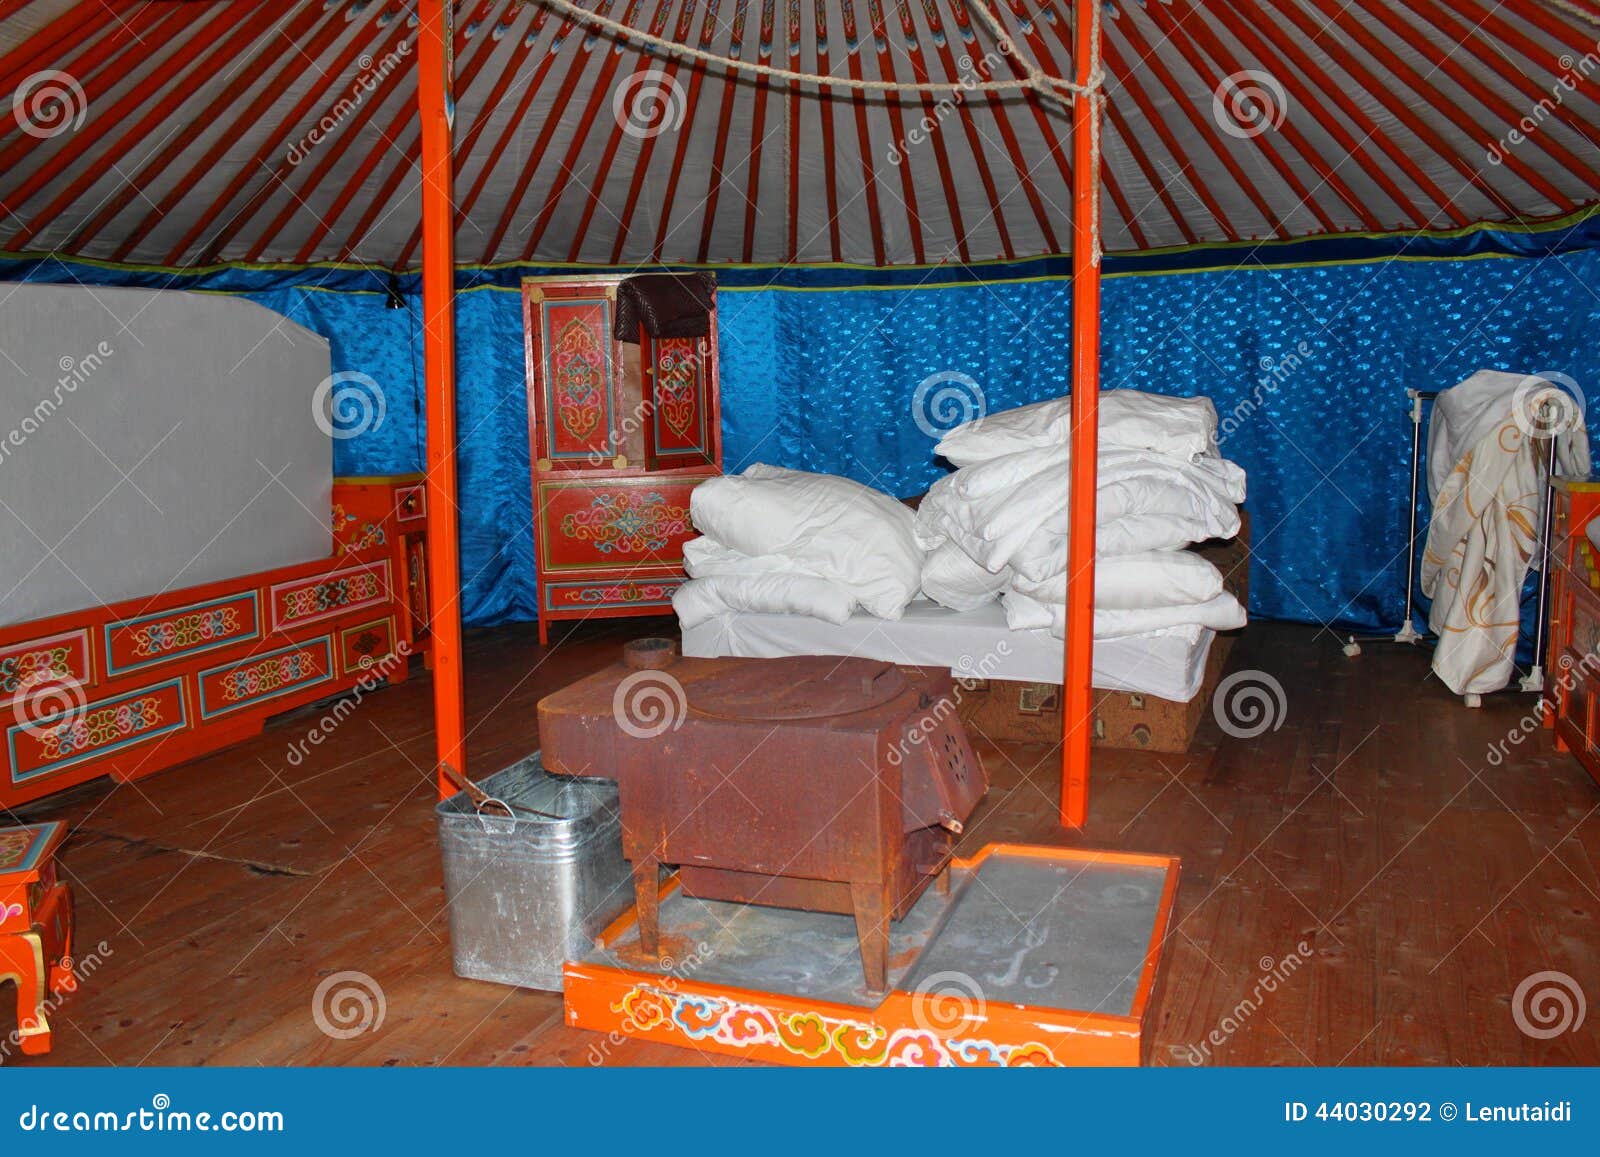 mongolian home - interior of yurt